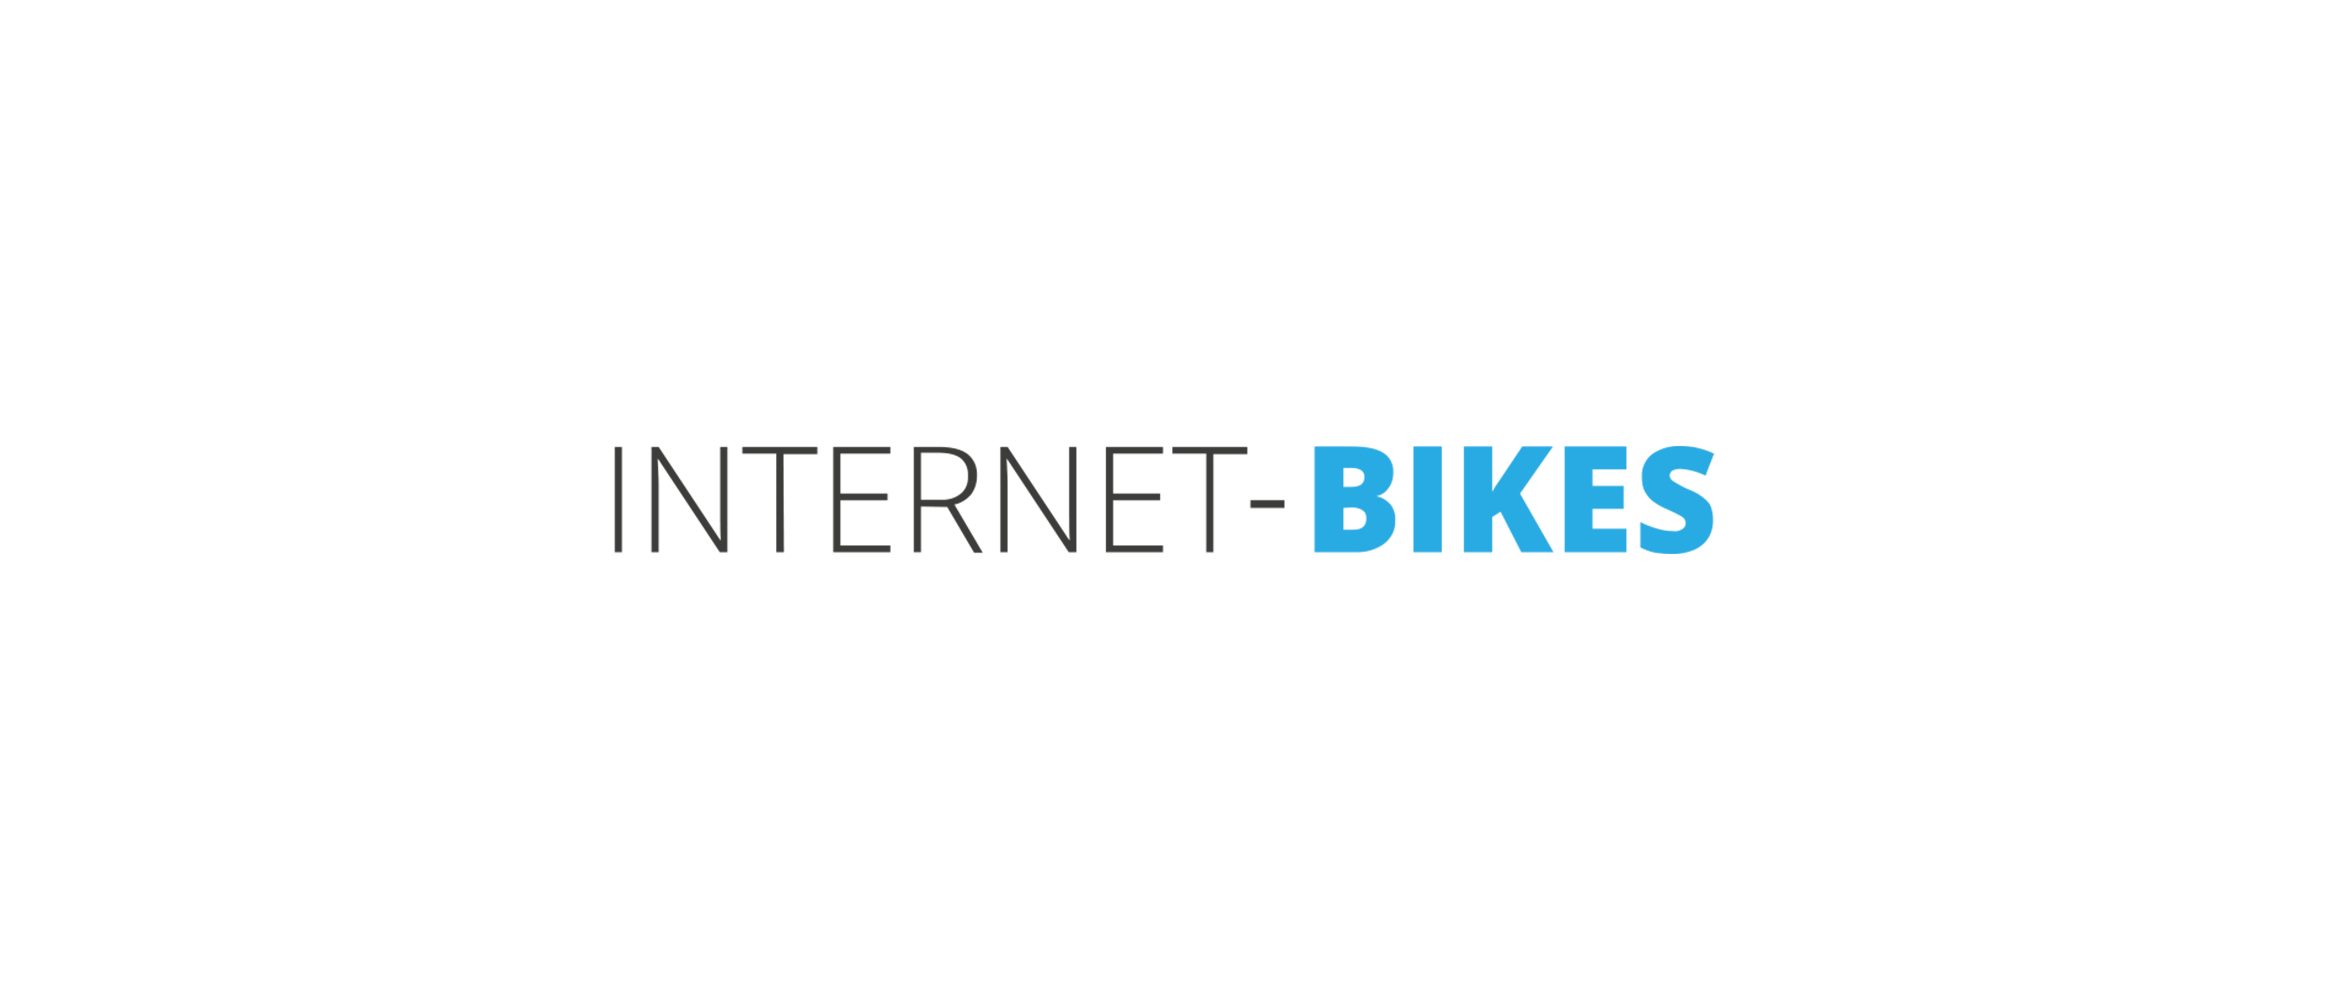 Internet-bikes.com